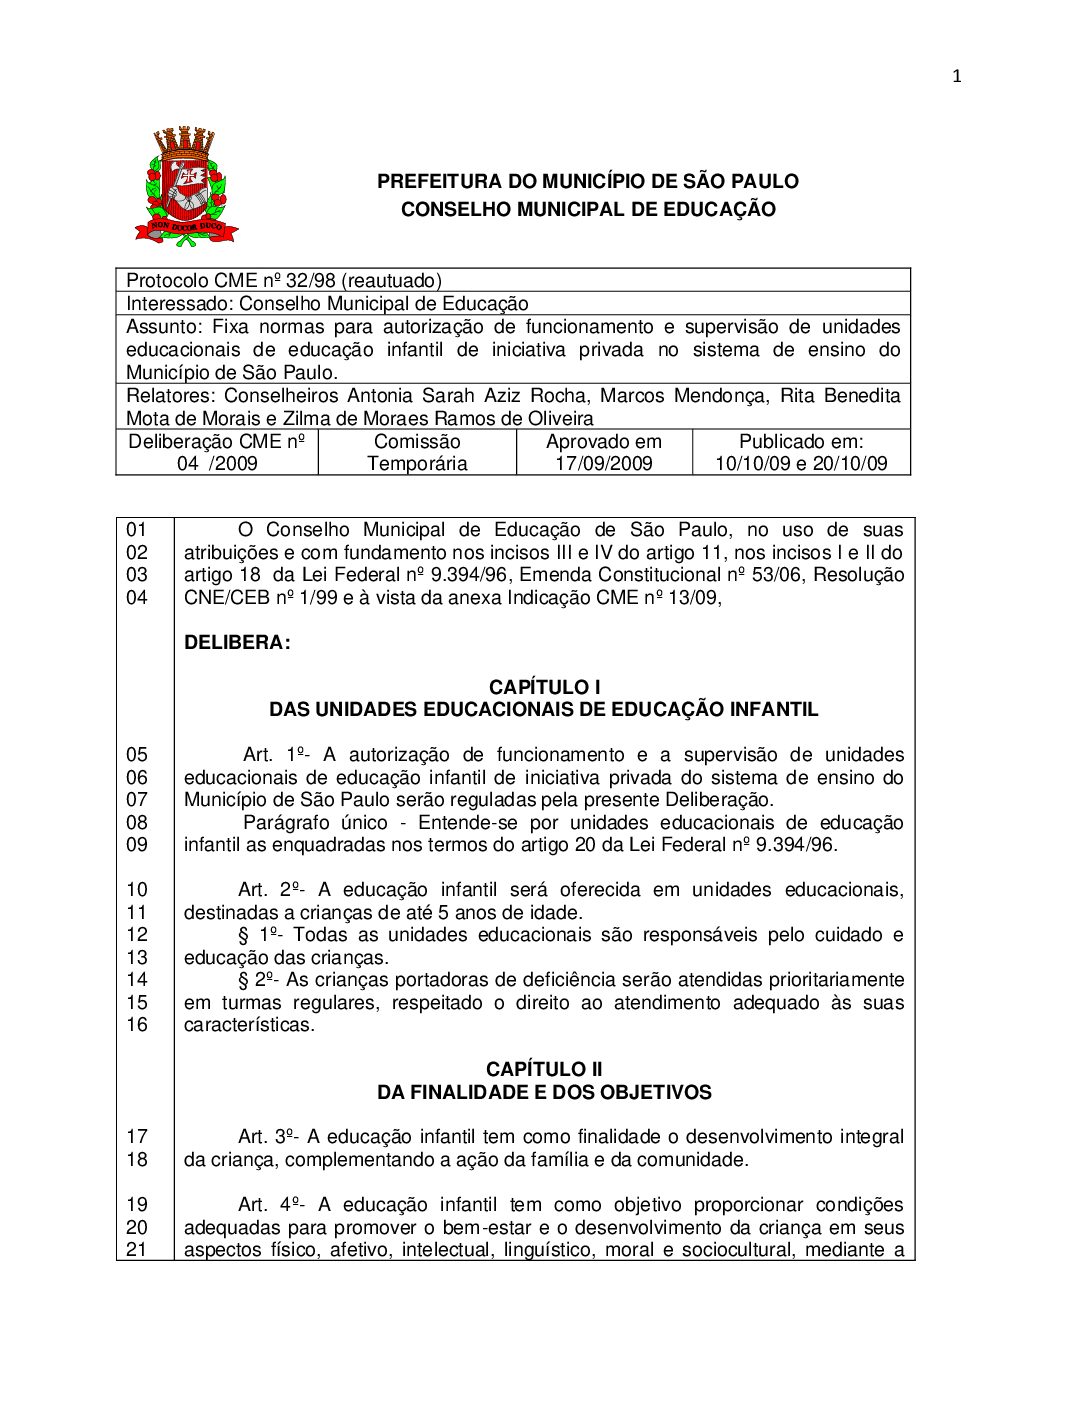 Deliberação CME nº 04/2009 - Fixa normas para autorização de funcionamento e supervisão de unidades educacionais de educação infantil de iniciativa privada no sistema de ensino do Município de São Paulo